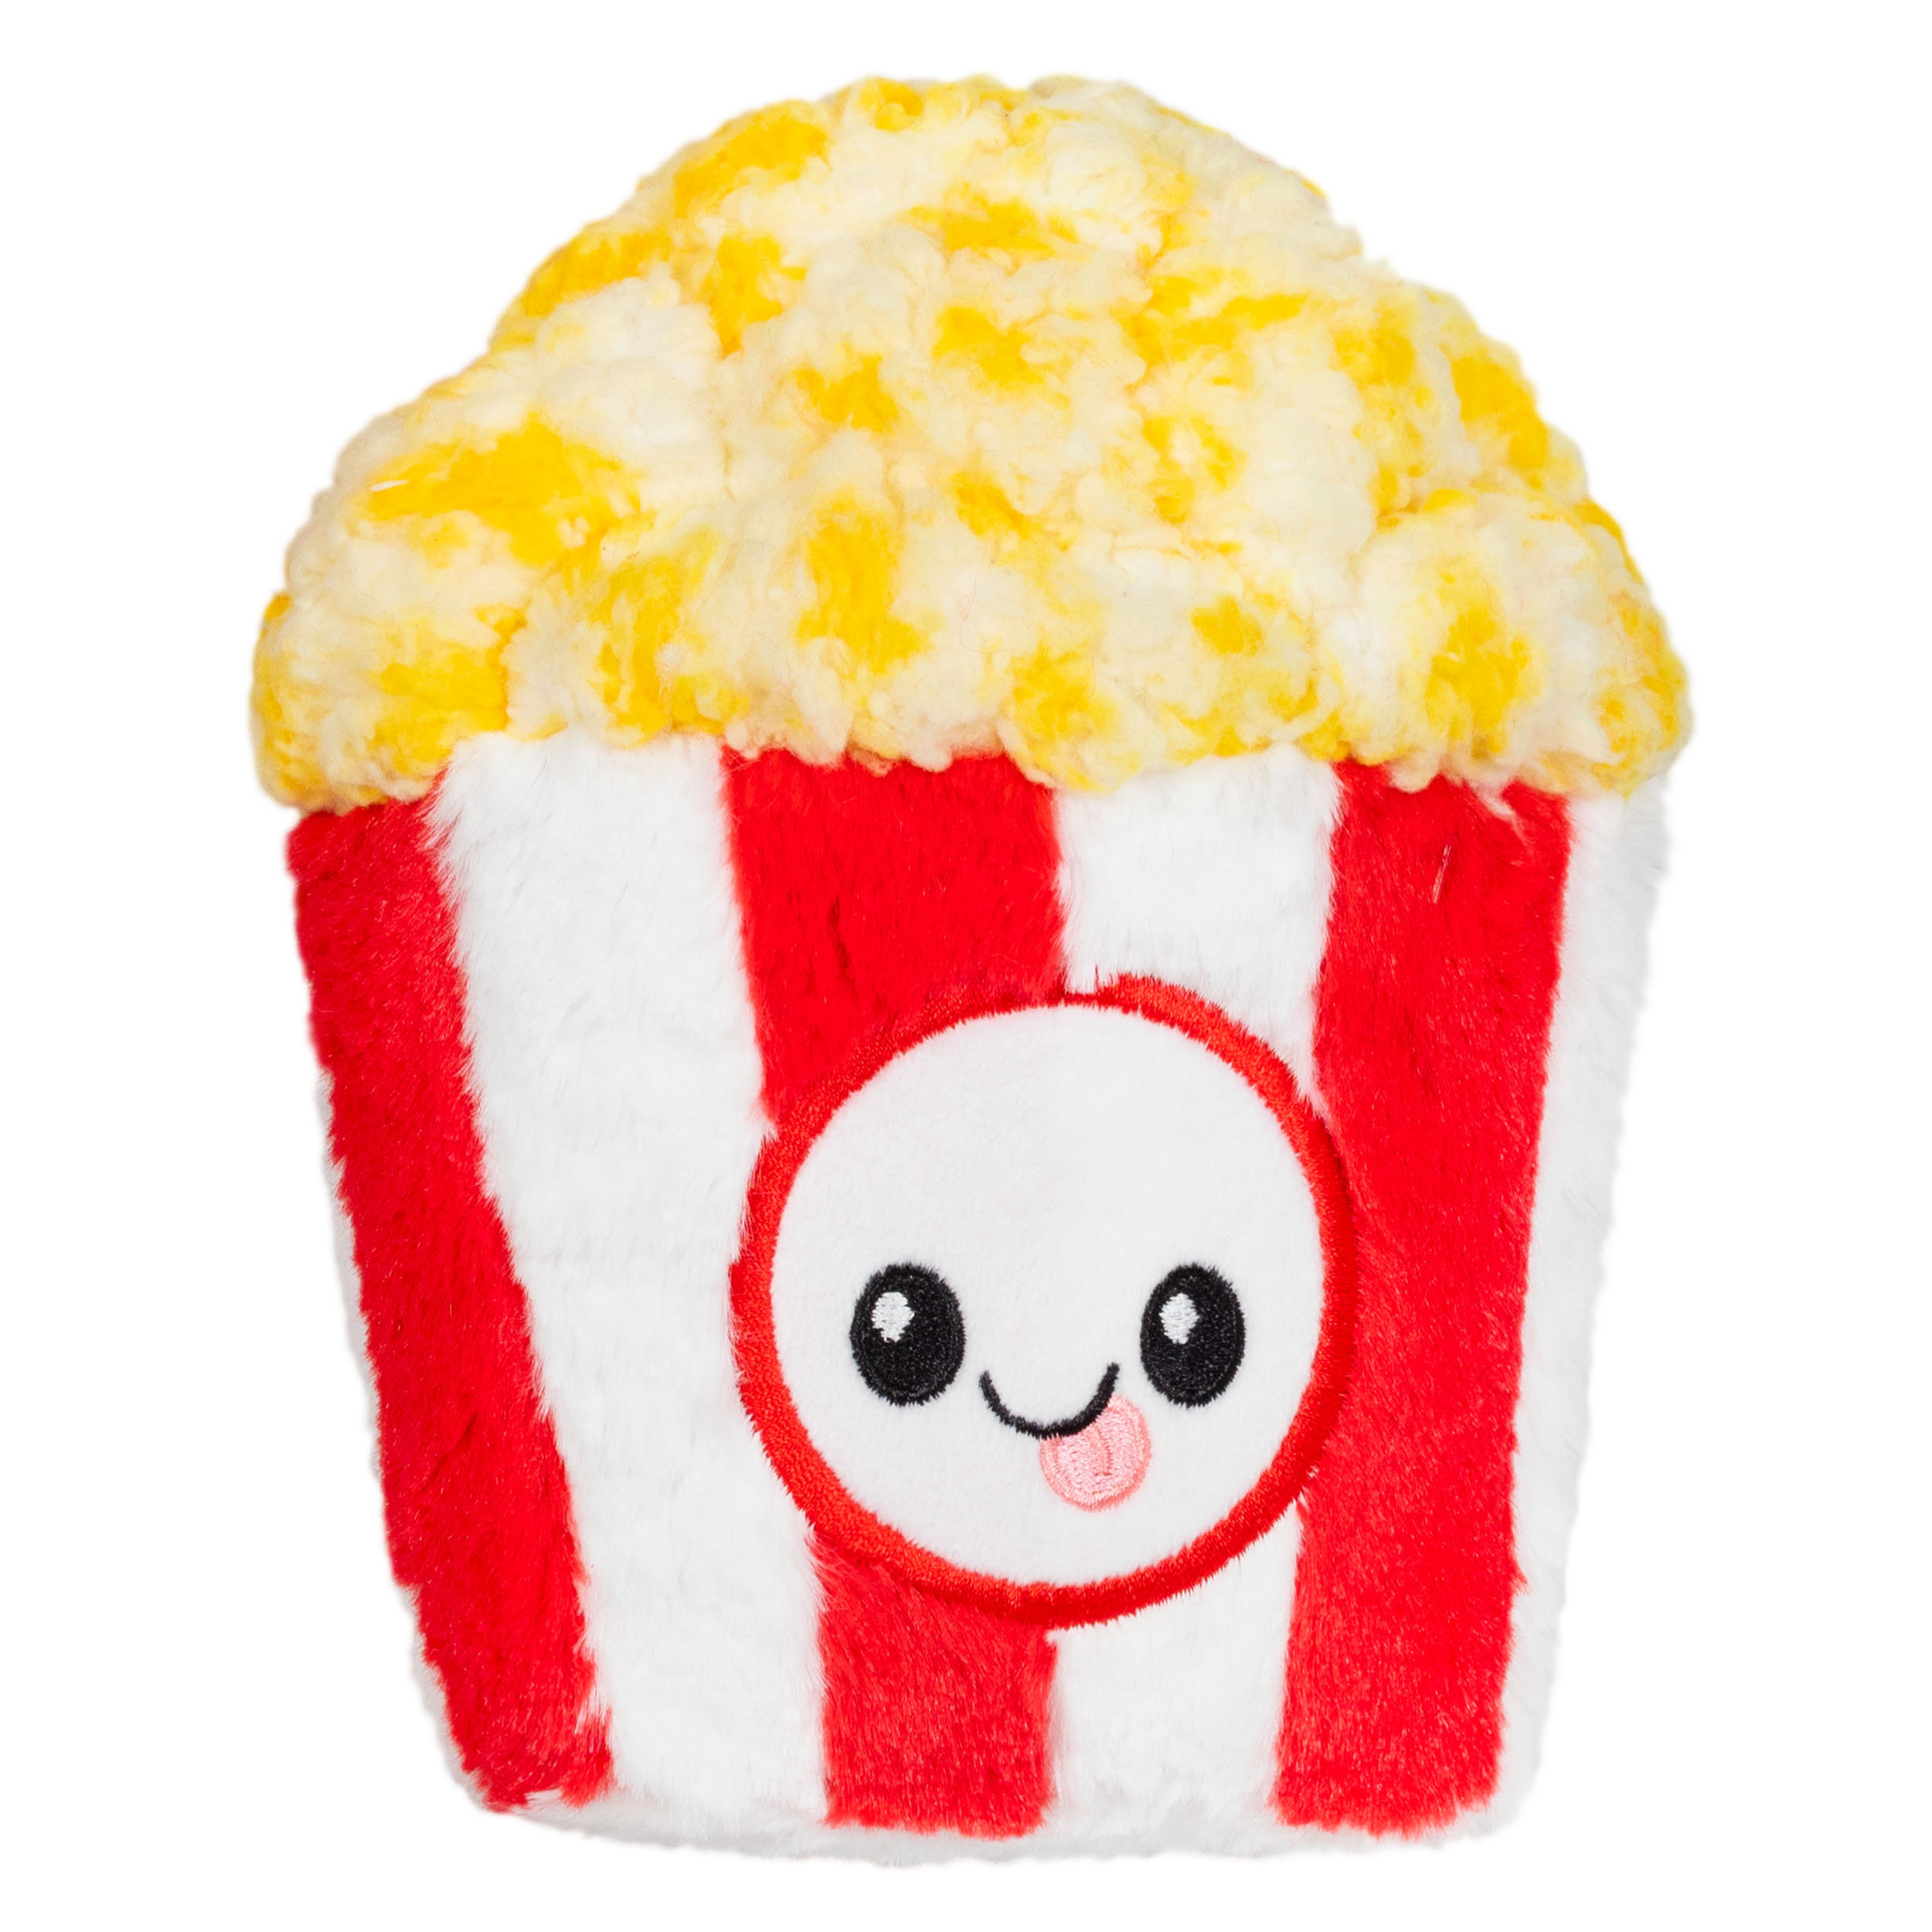 Snacker Popcorn toy